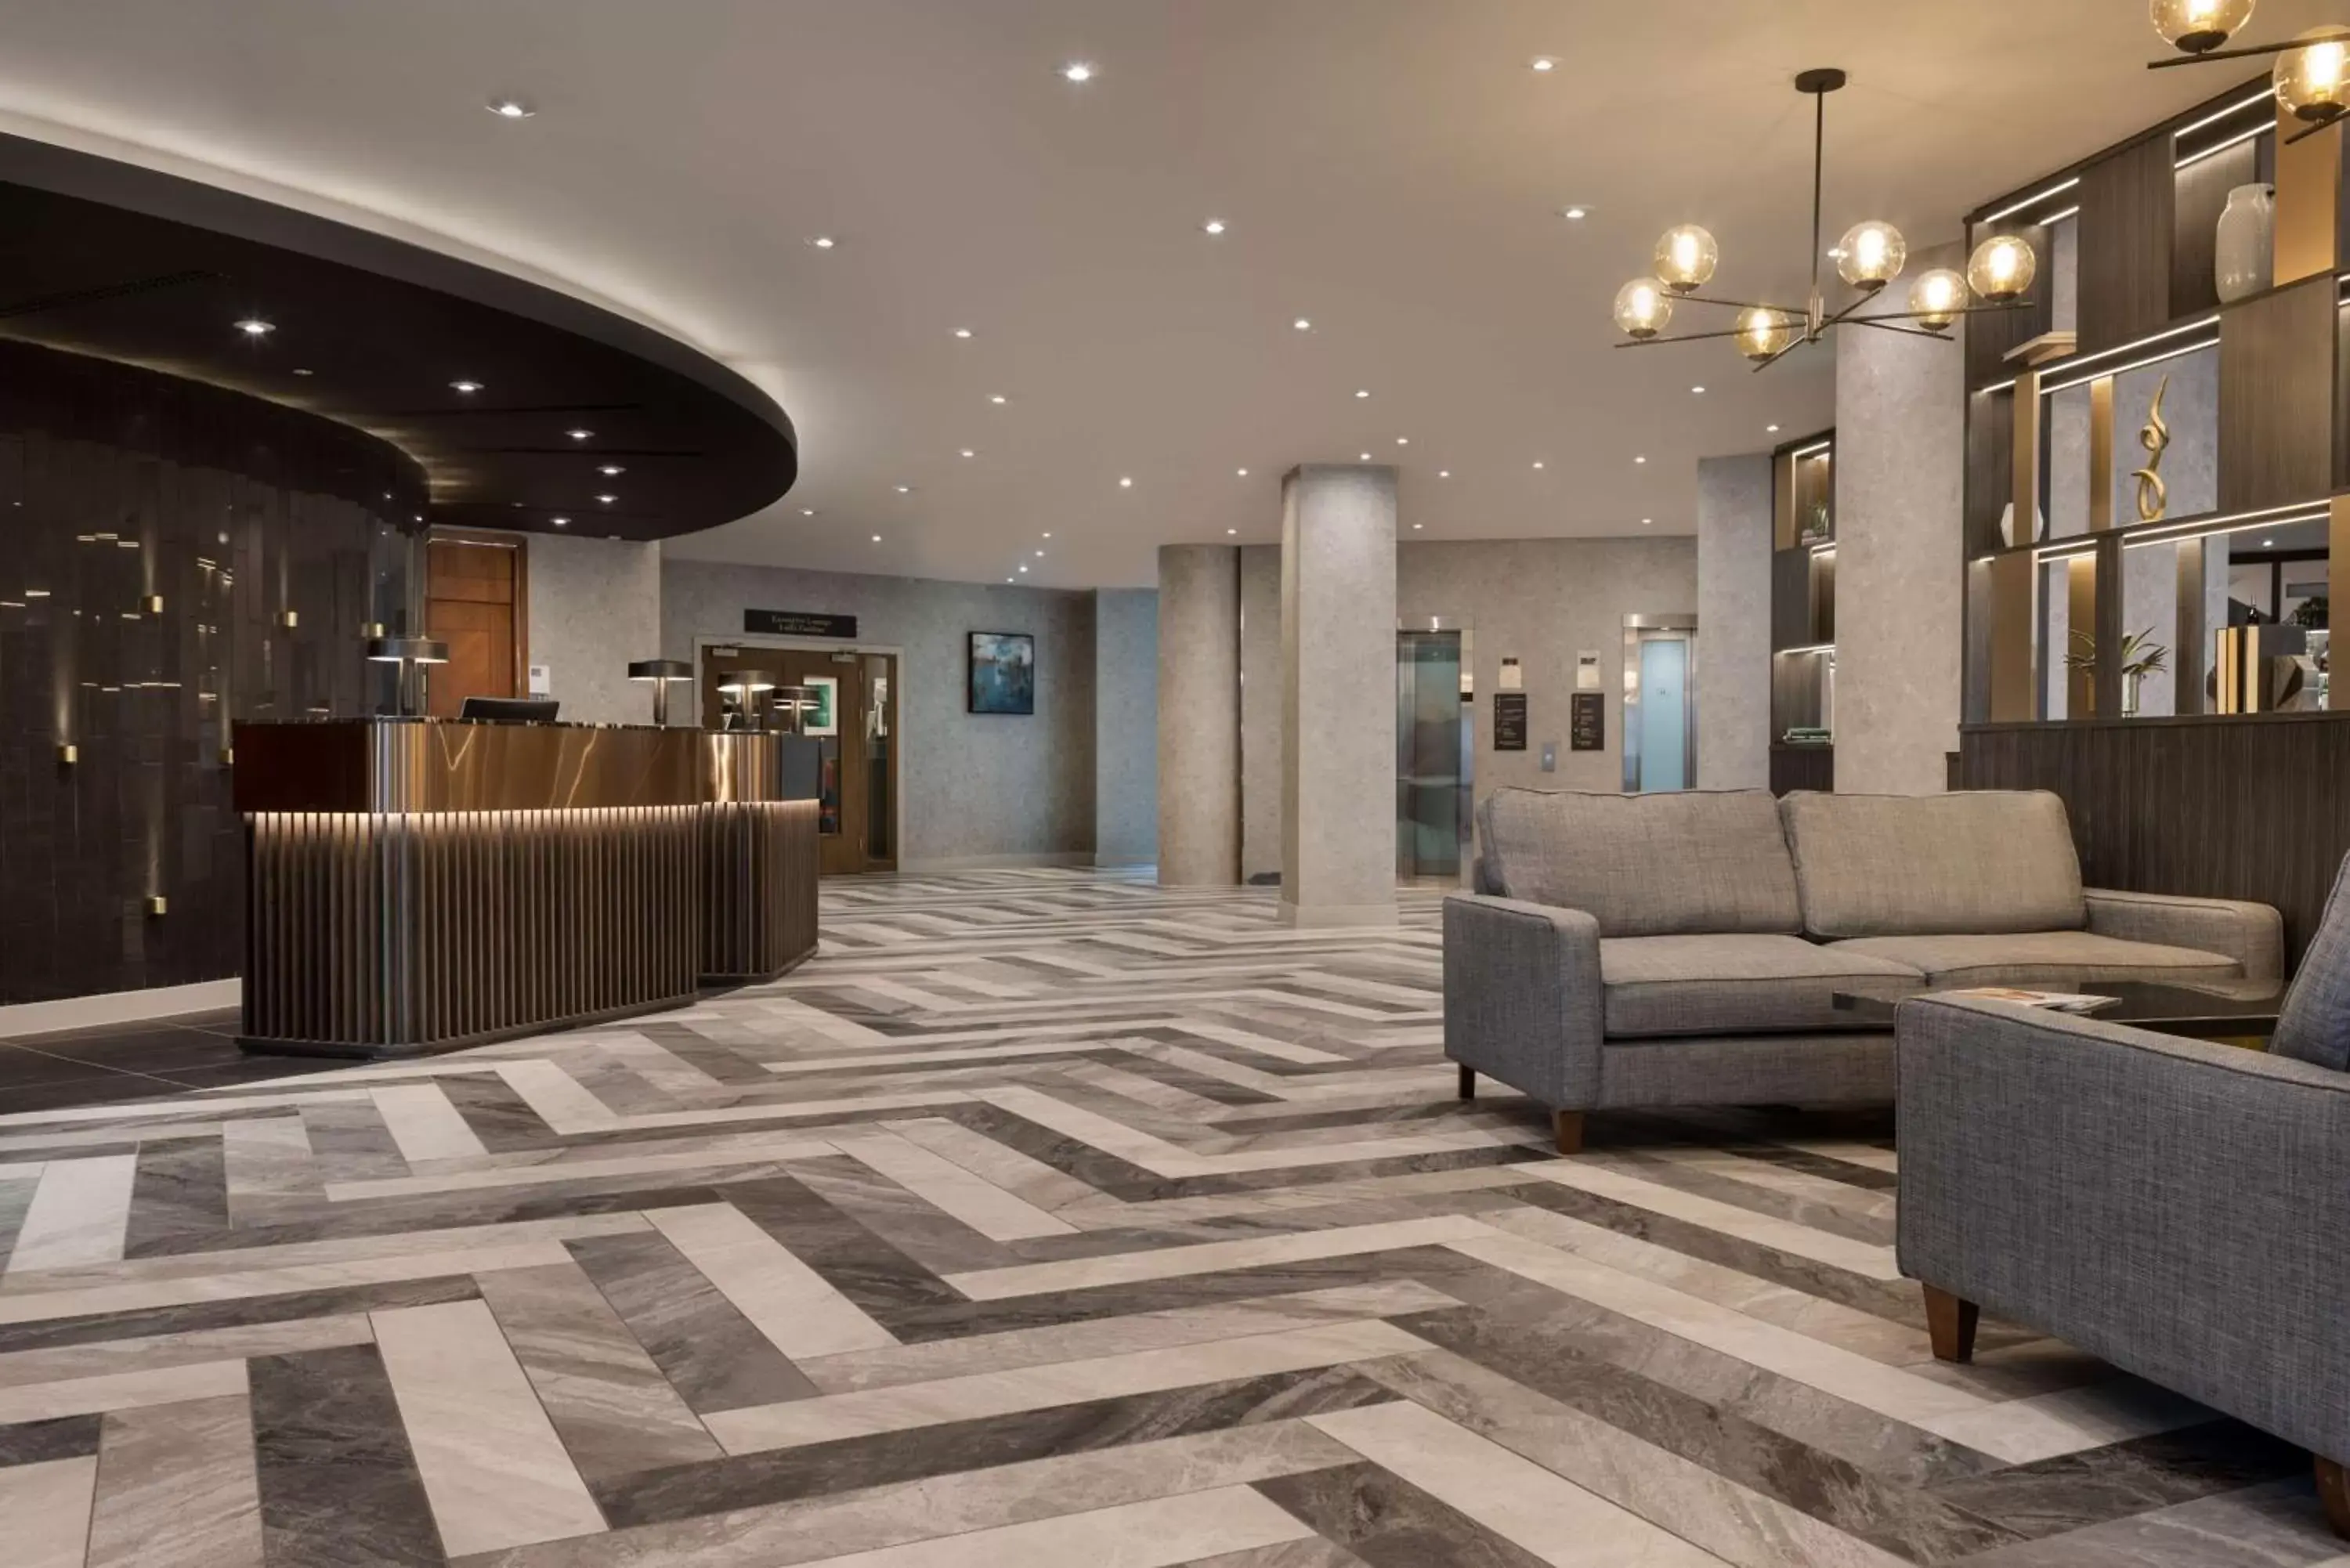 Lobby or reception, Lobby/Reception in Hilton Cardiff